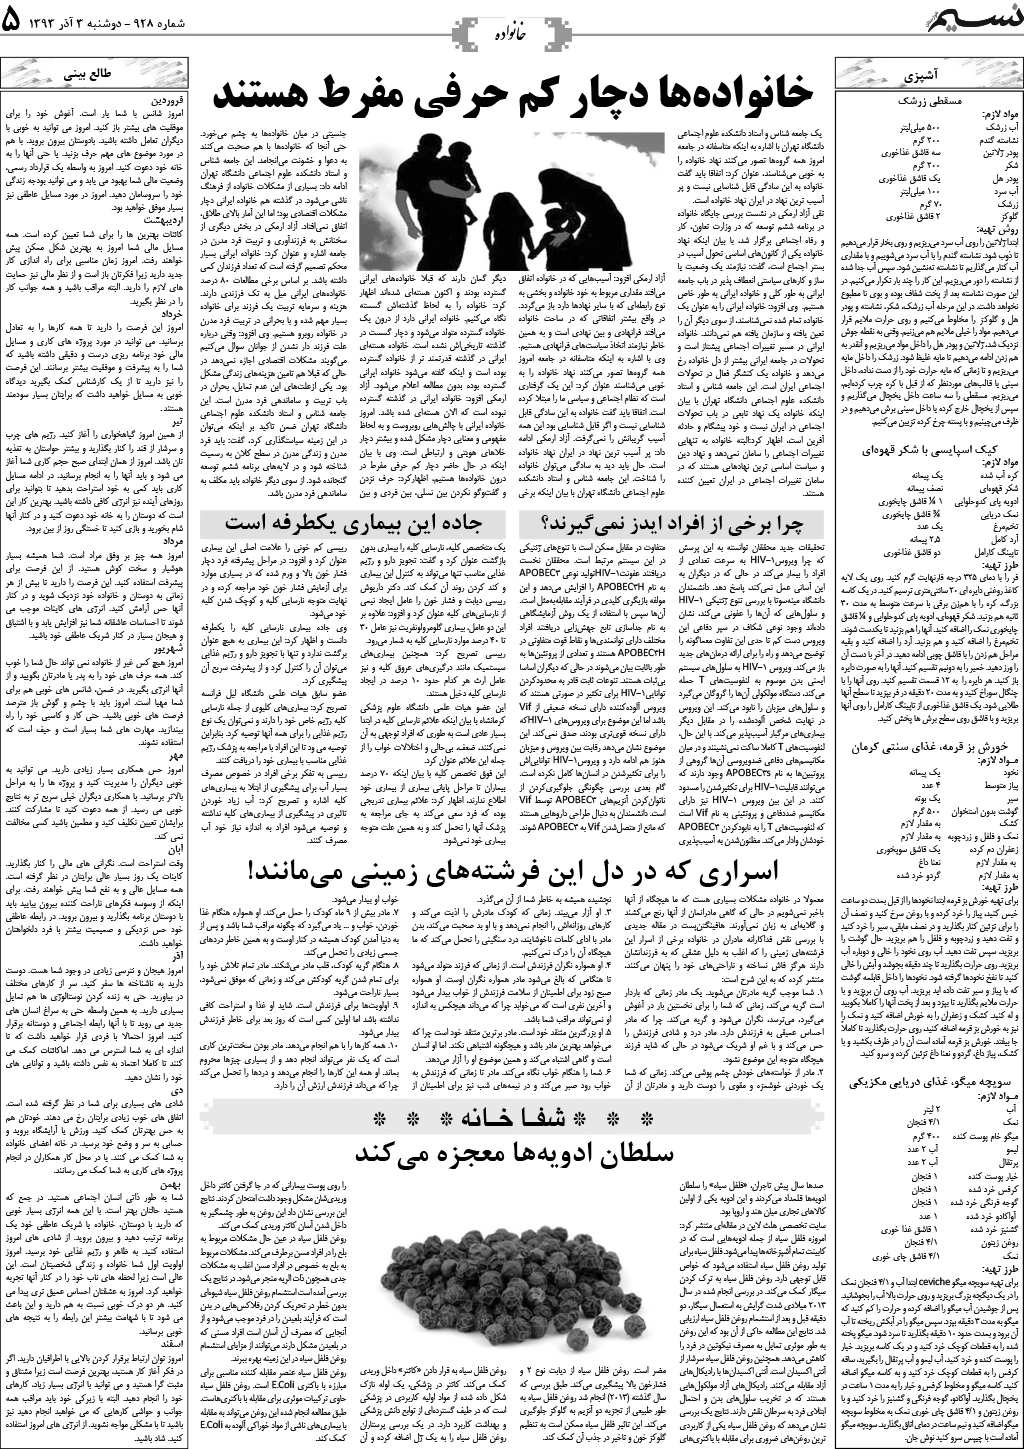 صفحه خانواده روزنامه نسیم شماره 928